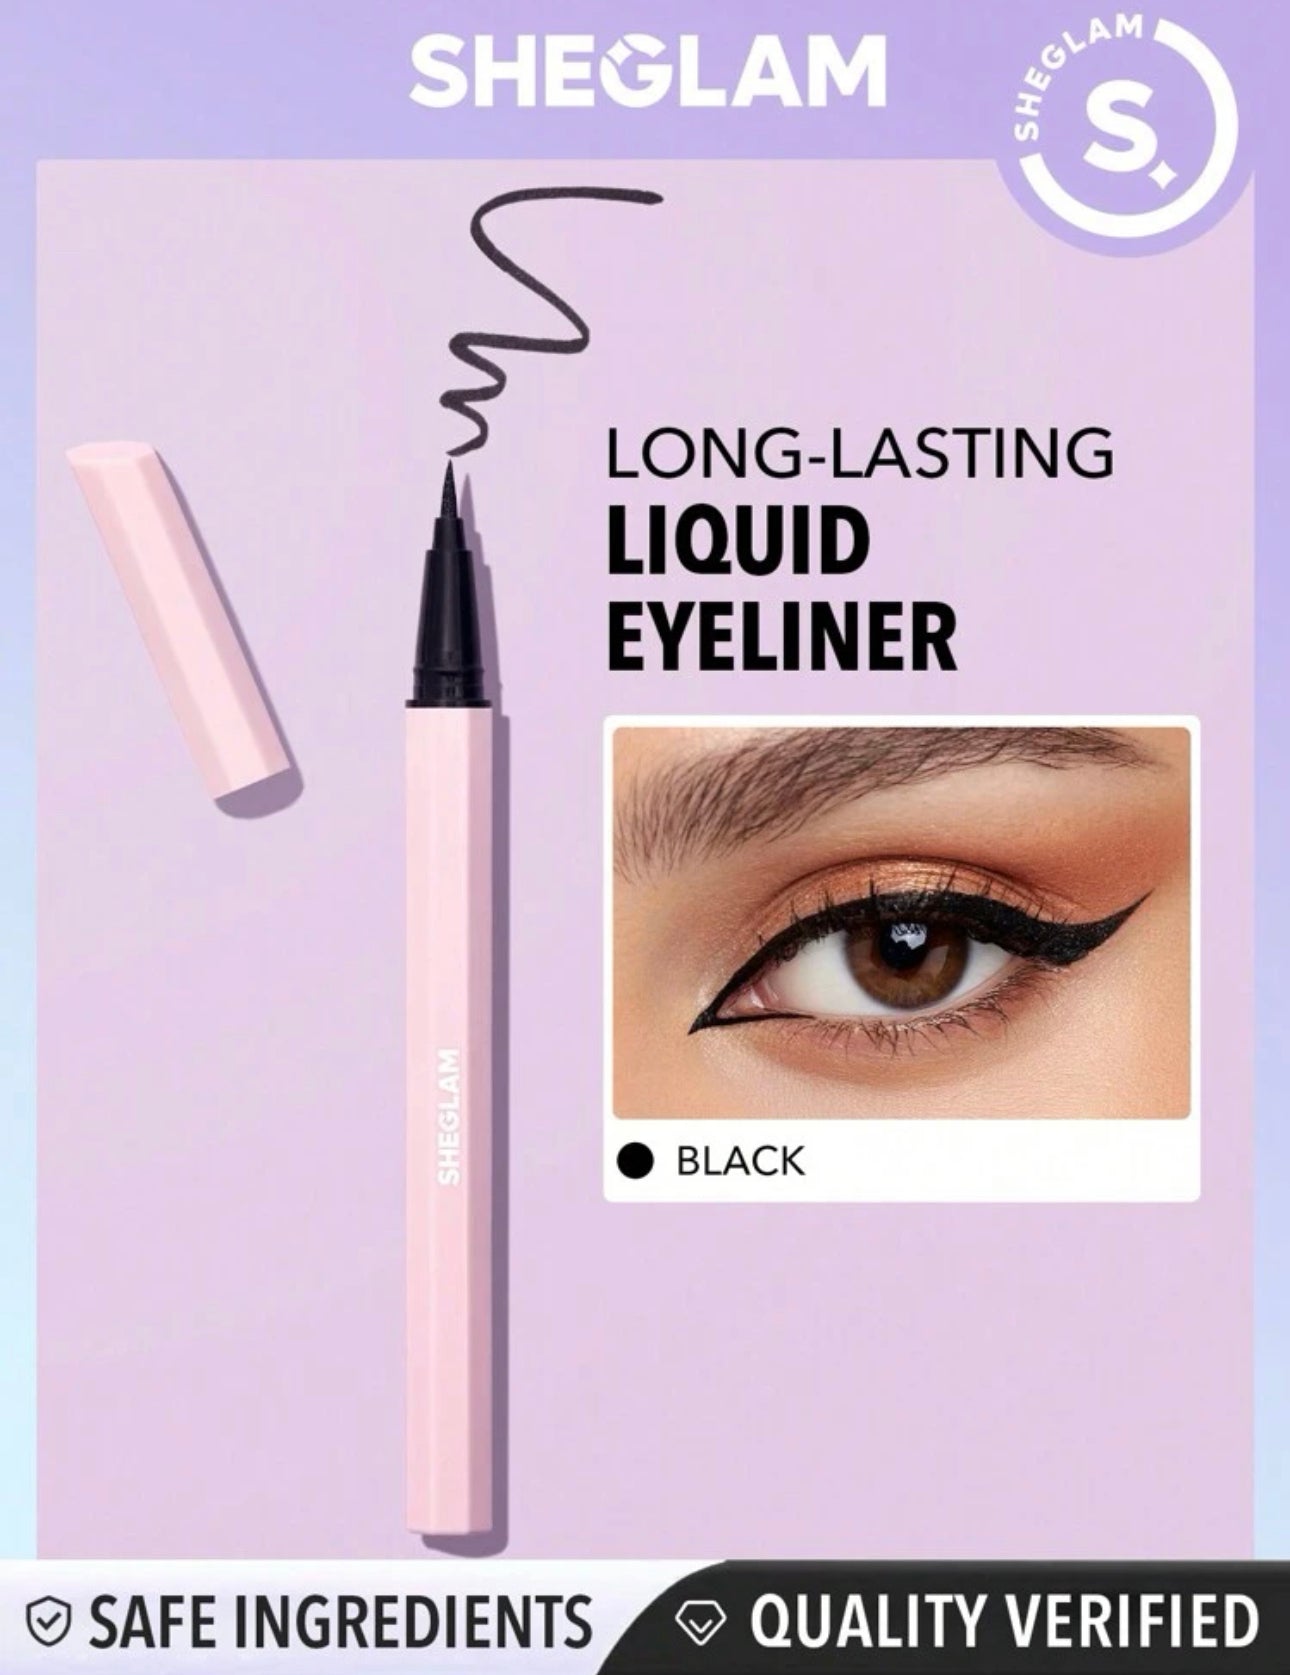 SHEGLAM Eternal Beauty Liquid Eyeliner-Black Waterproof